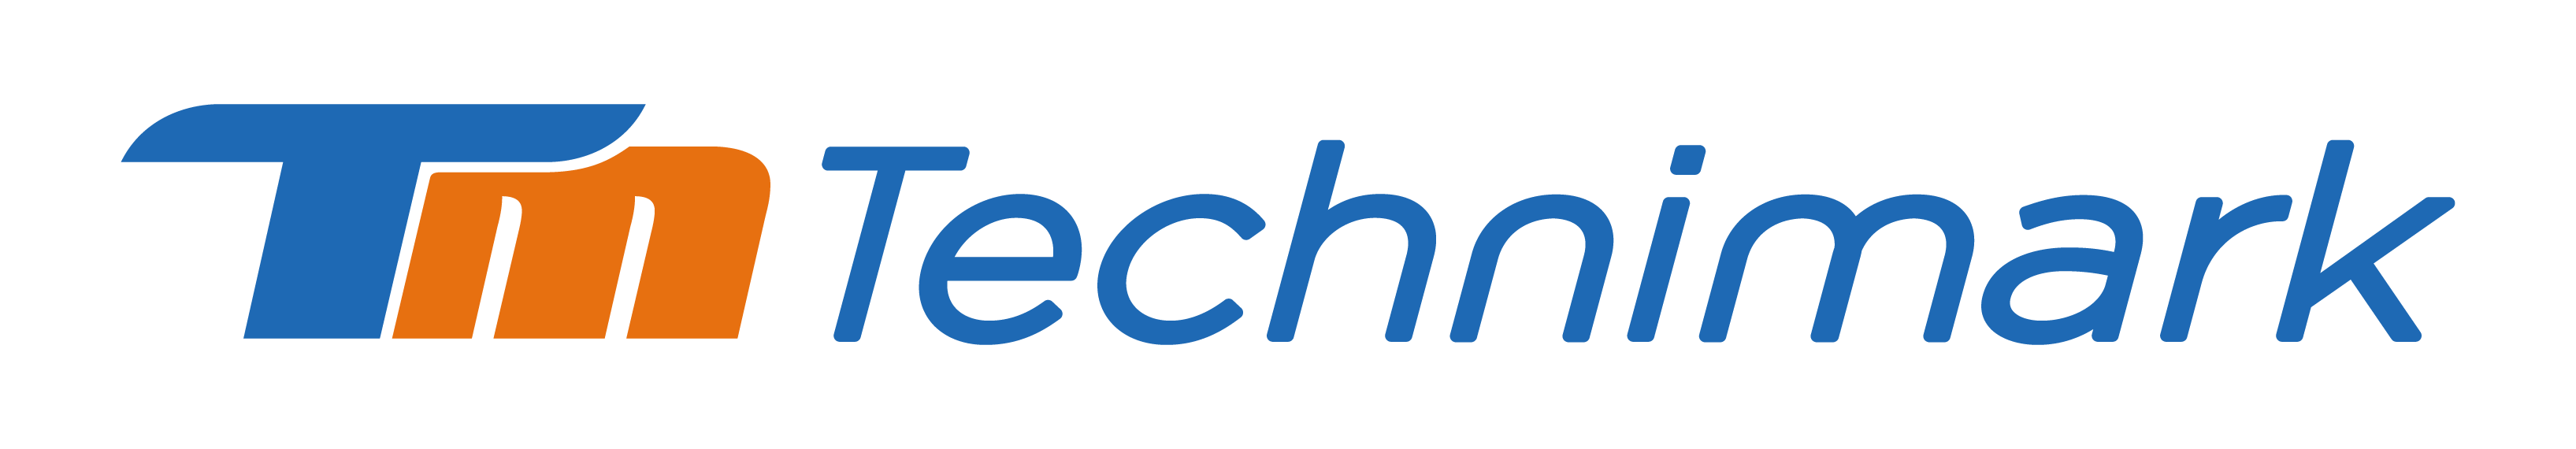 technimark logo